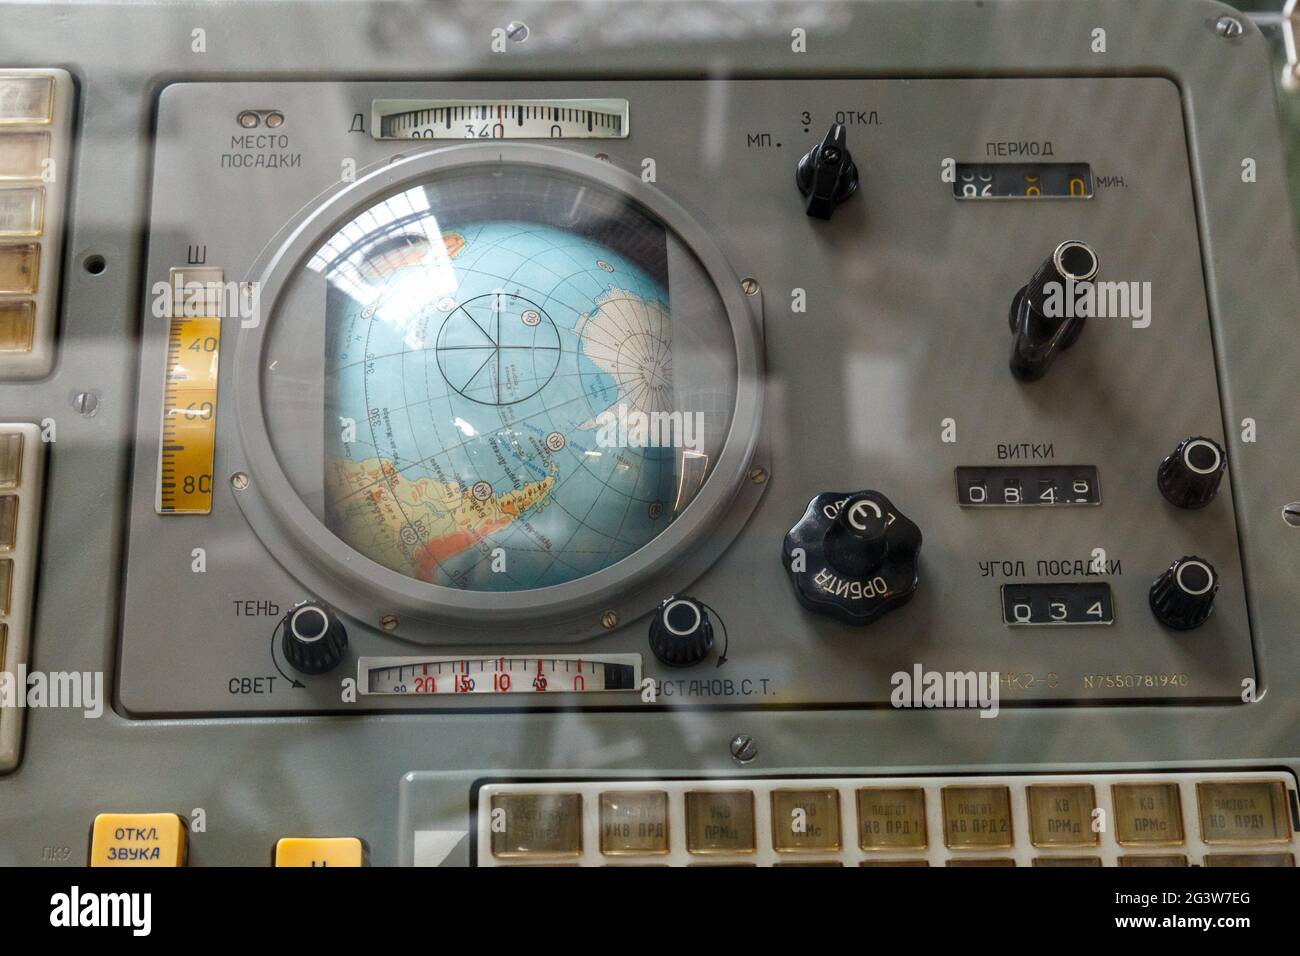 Moskau, Russland - 28. November 2018: Das Bedienfeld des ersten Sojus-Raumschiffs. Alte Anzeige-Navigationsleiste, Armaturenbrett-Ausstattung Stockfoto